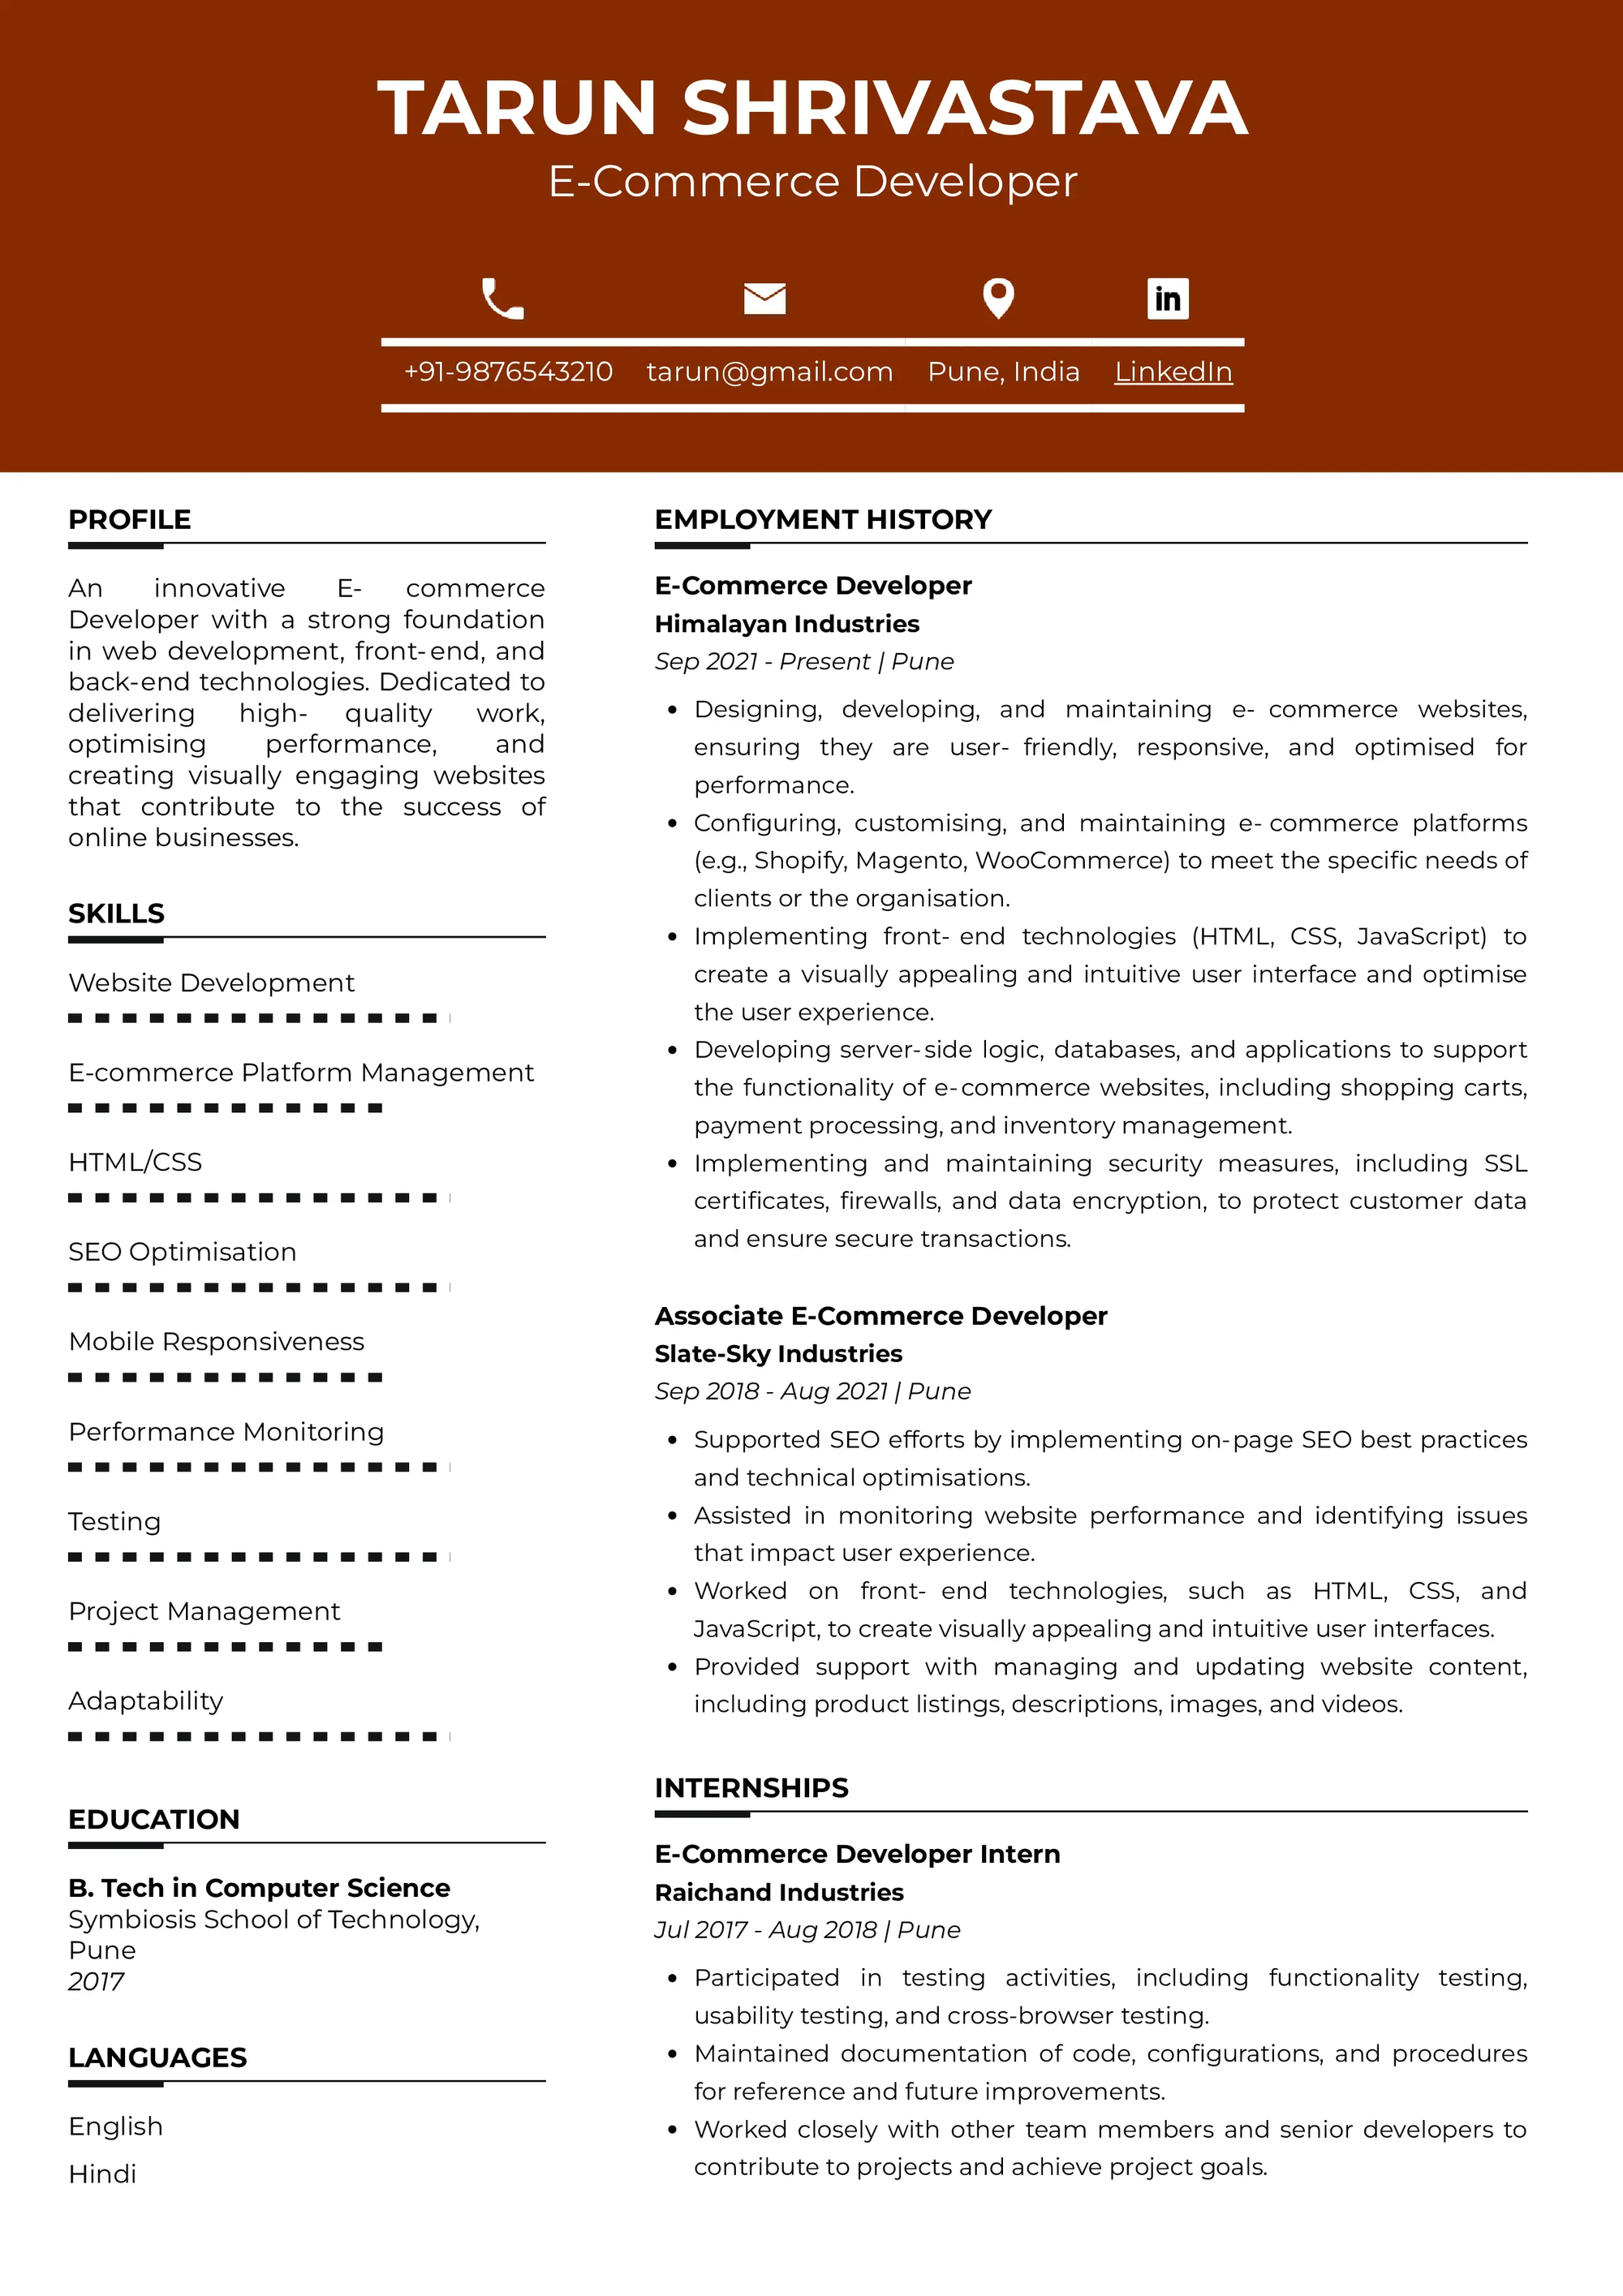 Resume of E-Commerce Developer 